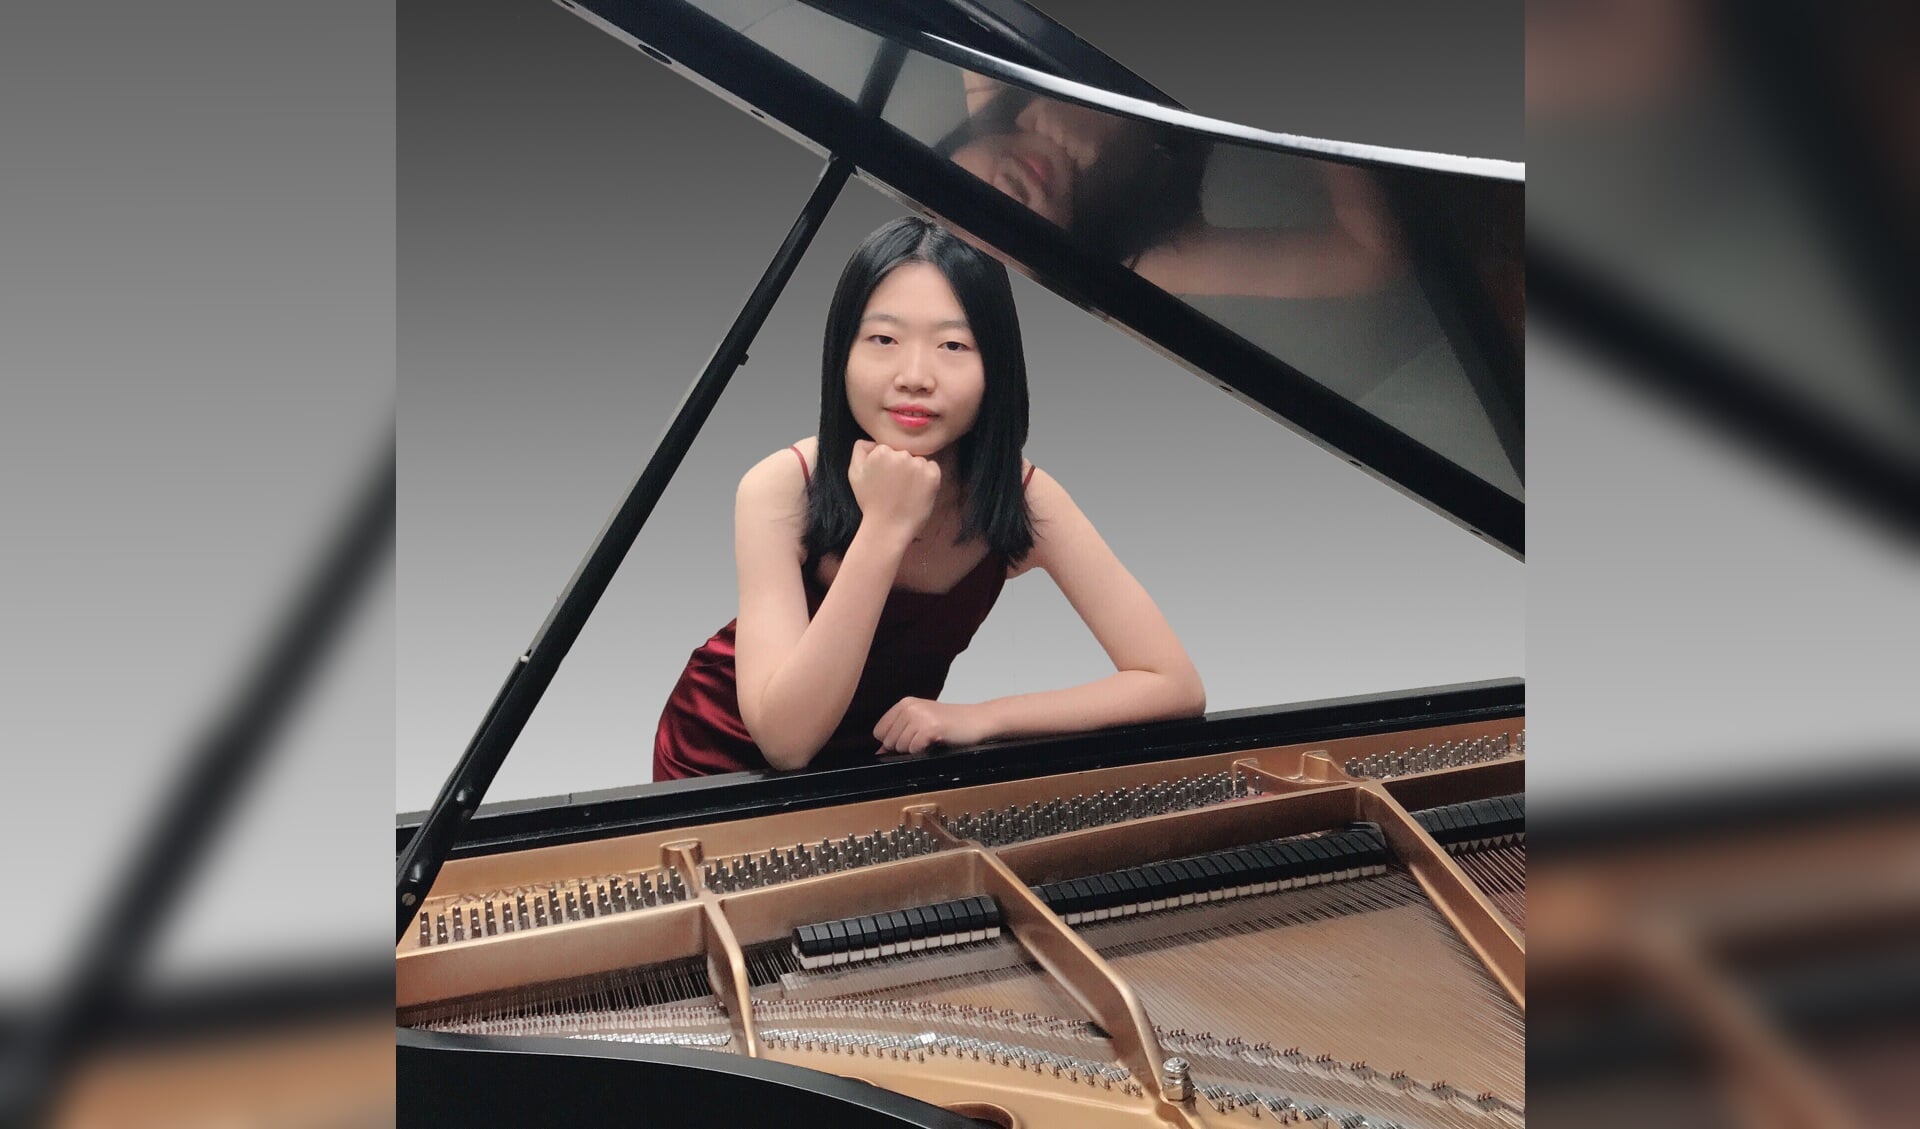 De talentvolle Chinese pianiste Yidi Jiao speelt een sonate van Schubert. (foto Sining Liu)